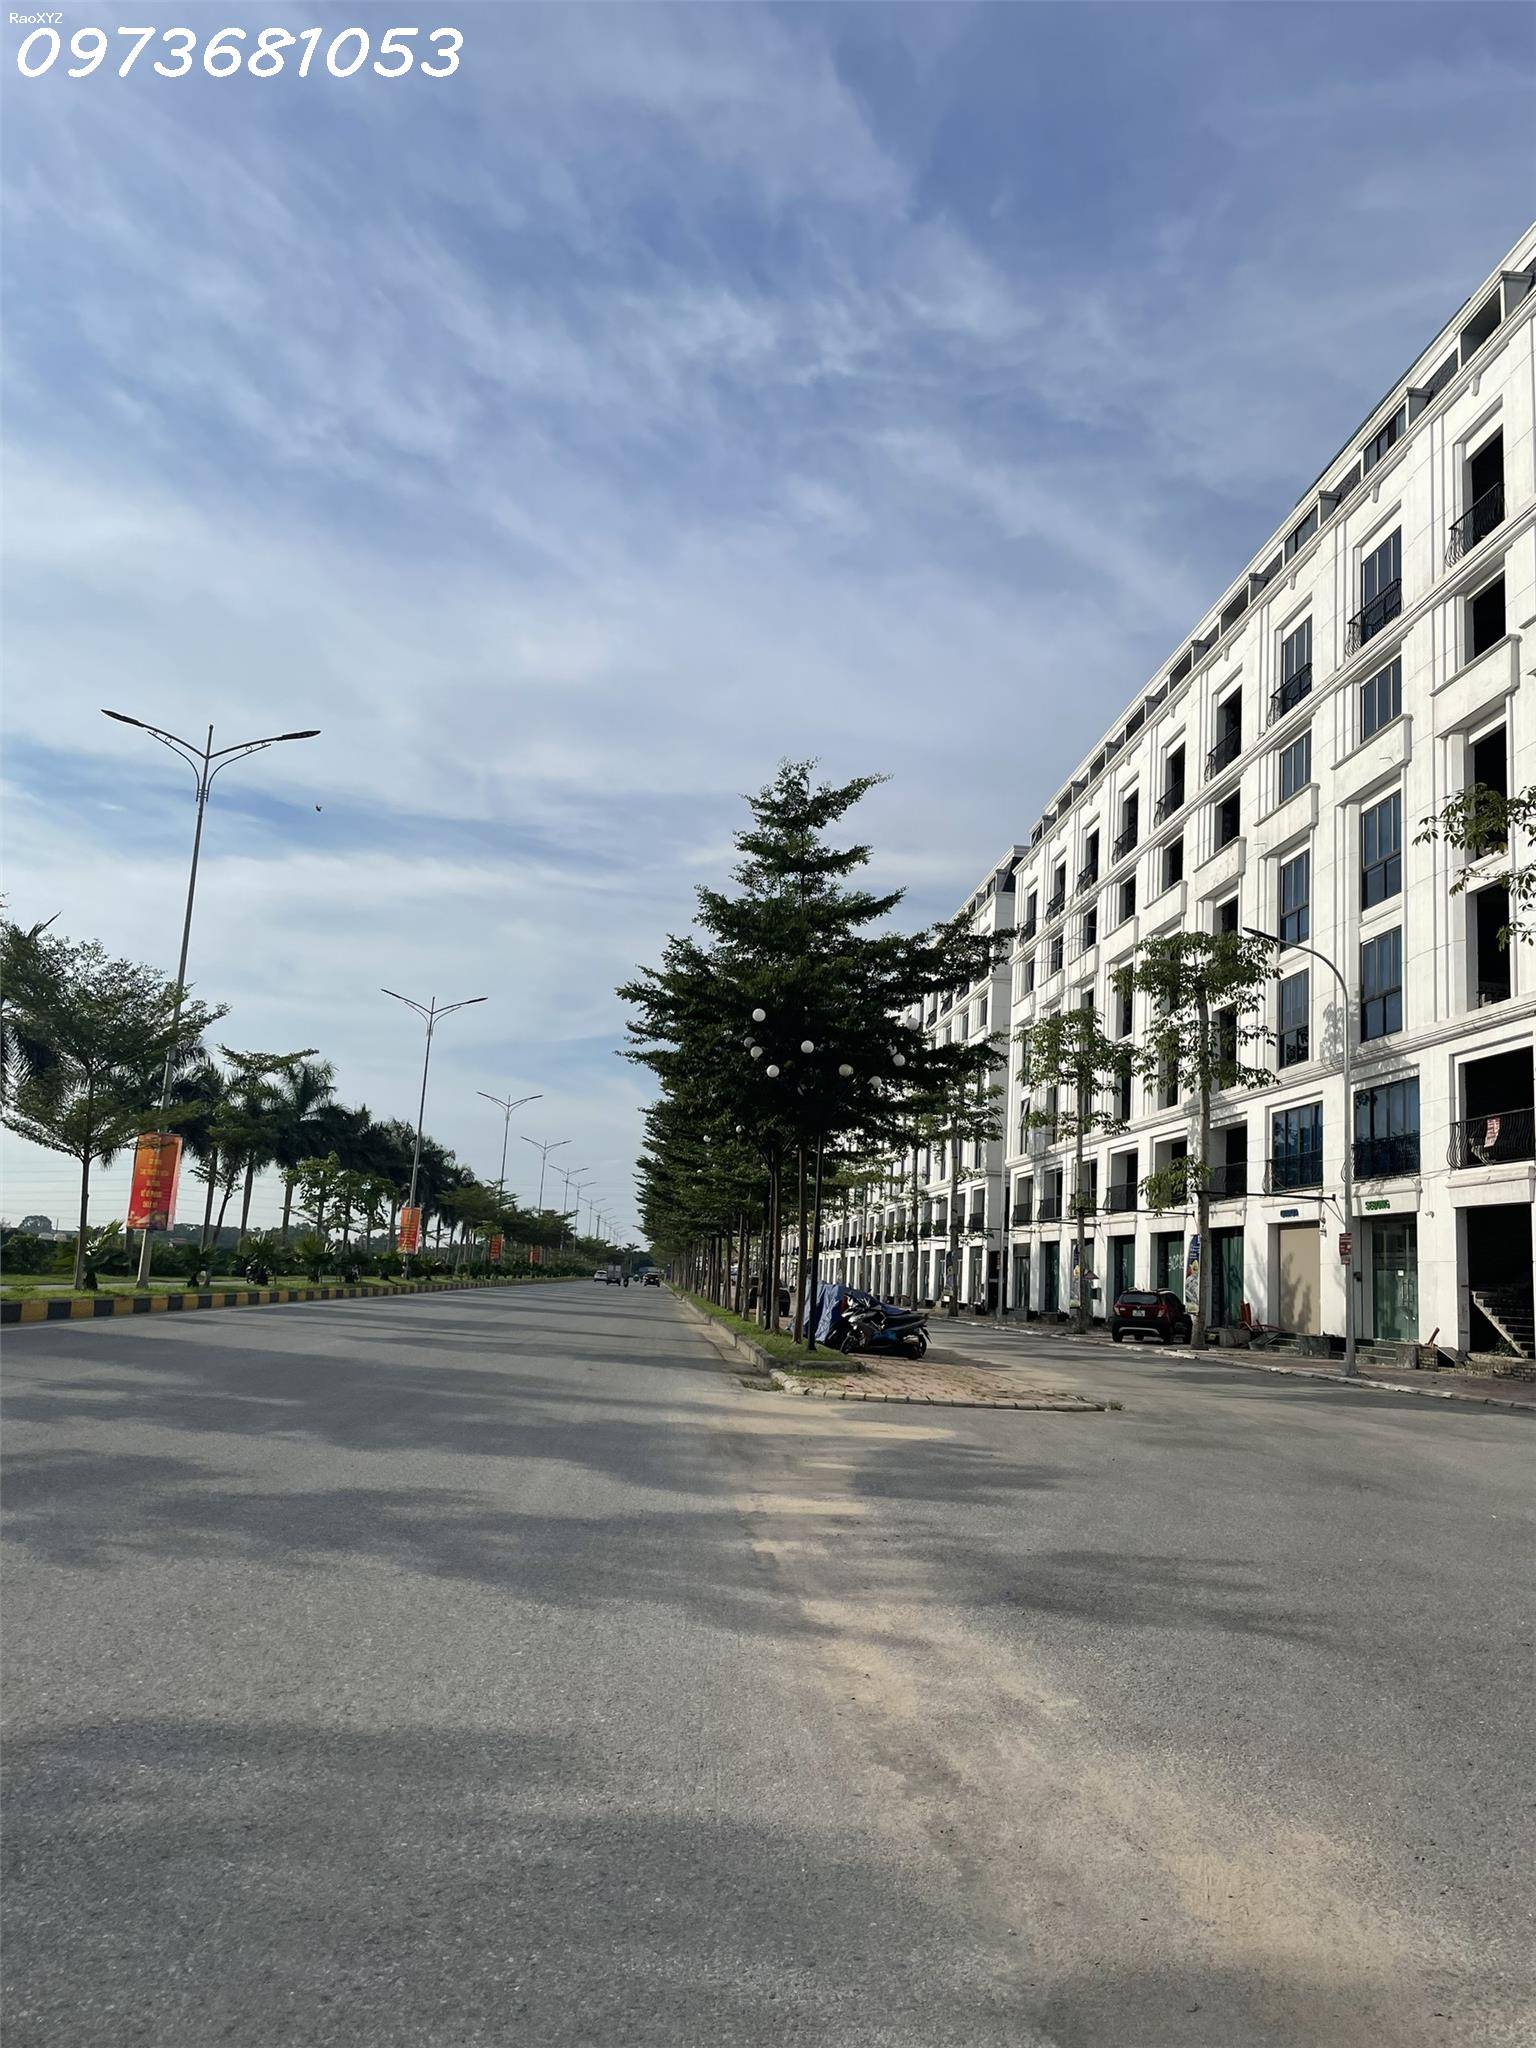 ⚜️Cát Tường Smart City Yên Phong, Khơi Nguồn Thịnh Vượng- Thắp Sáng An Cư